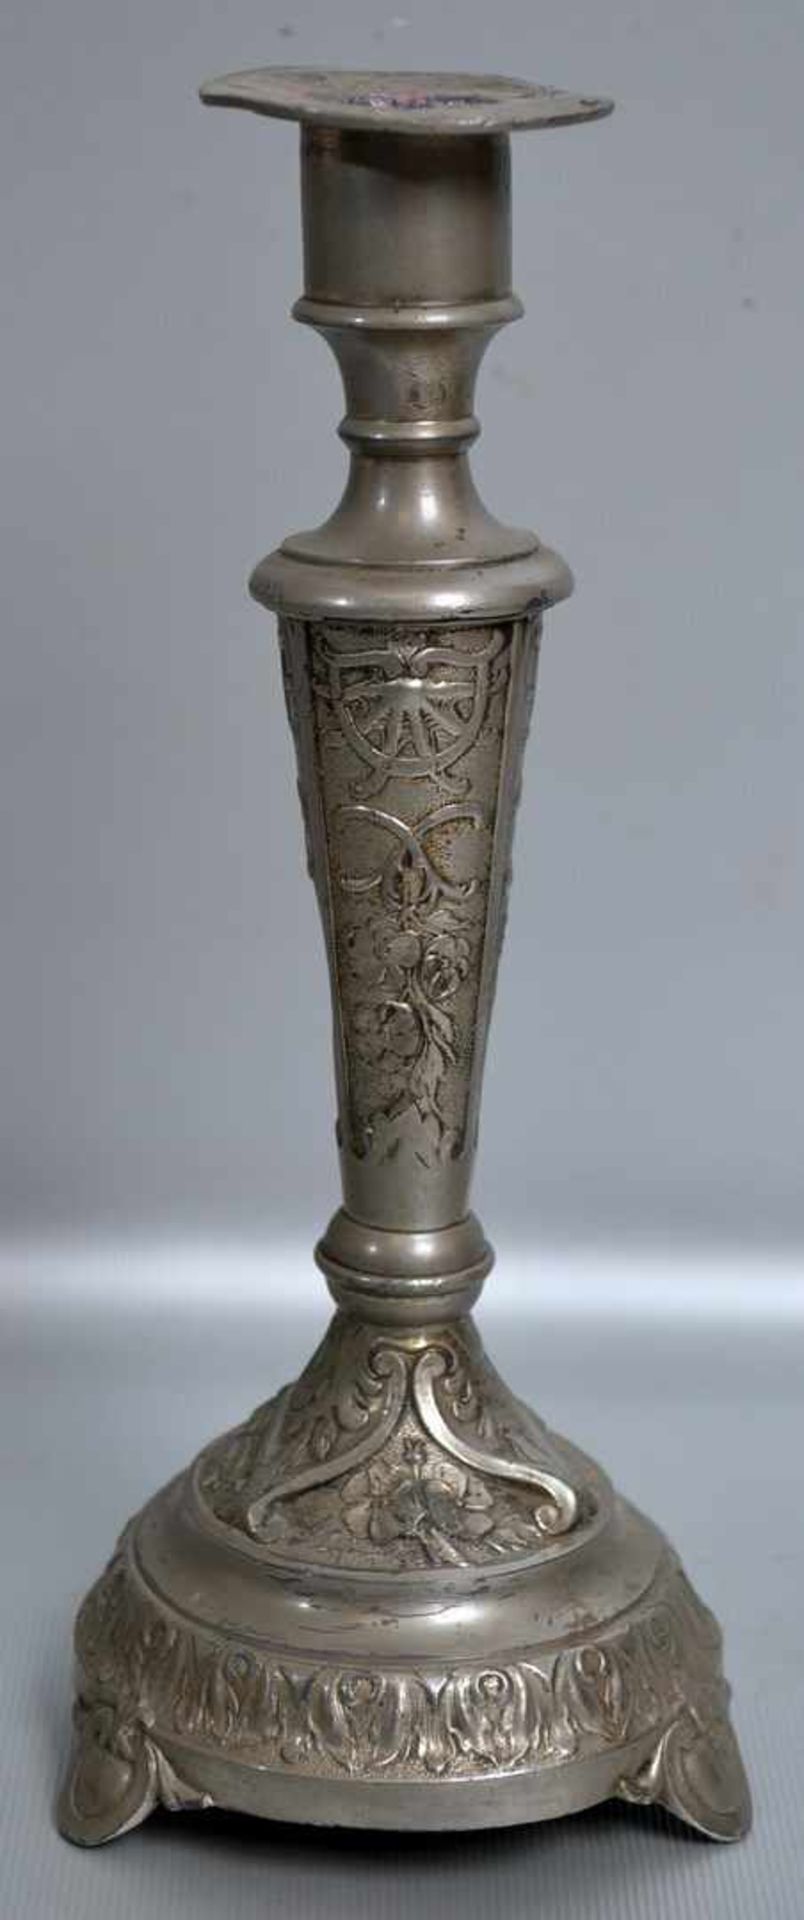 Tischkerzenleuchter 1-lichtig, Weißmetall, runder Fuß, verzierter Schaft, H 22 cm, um 1900